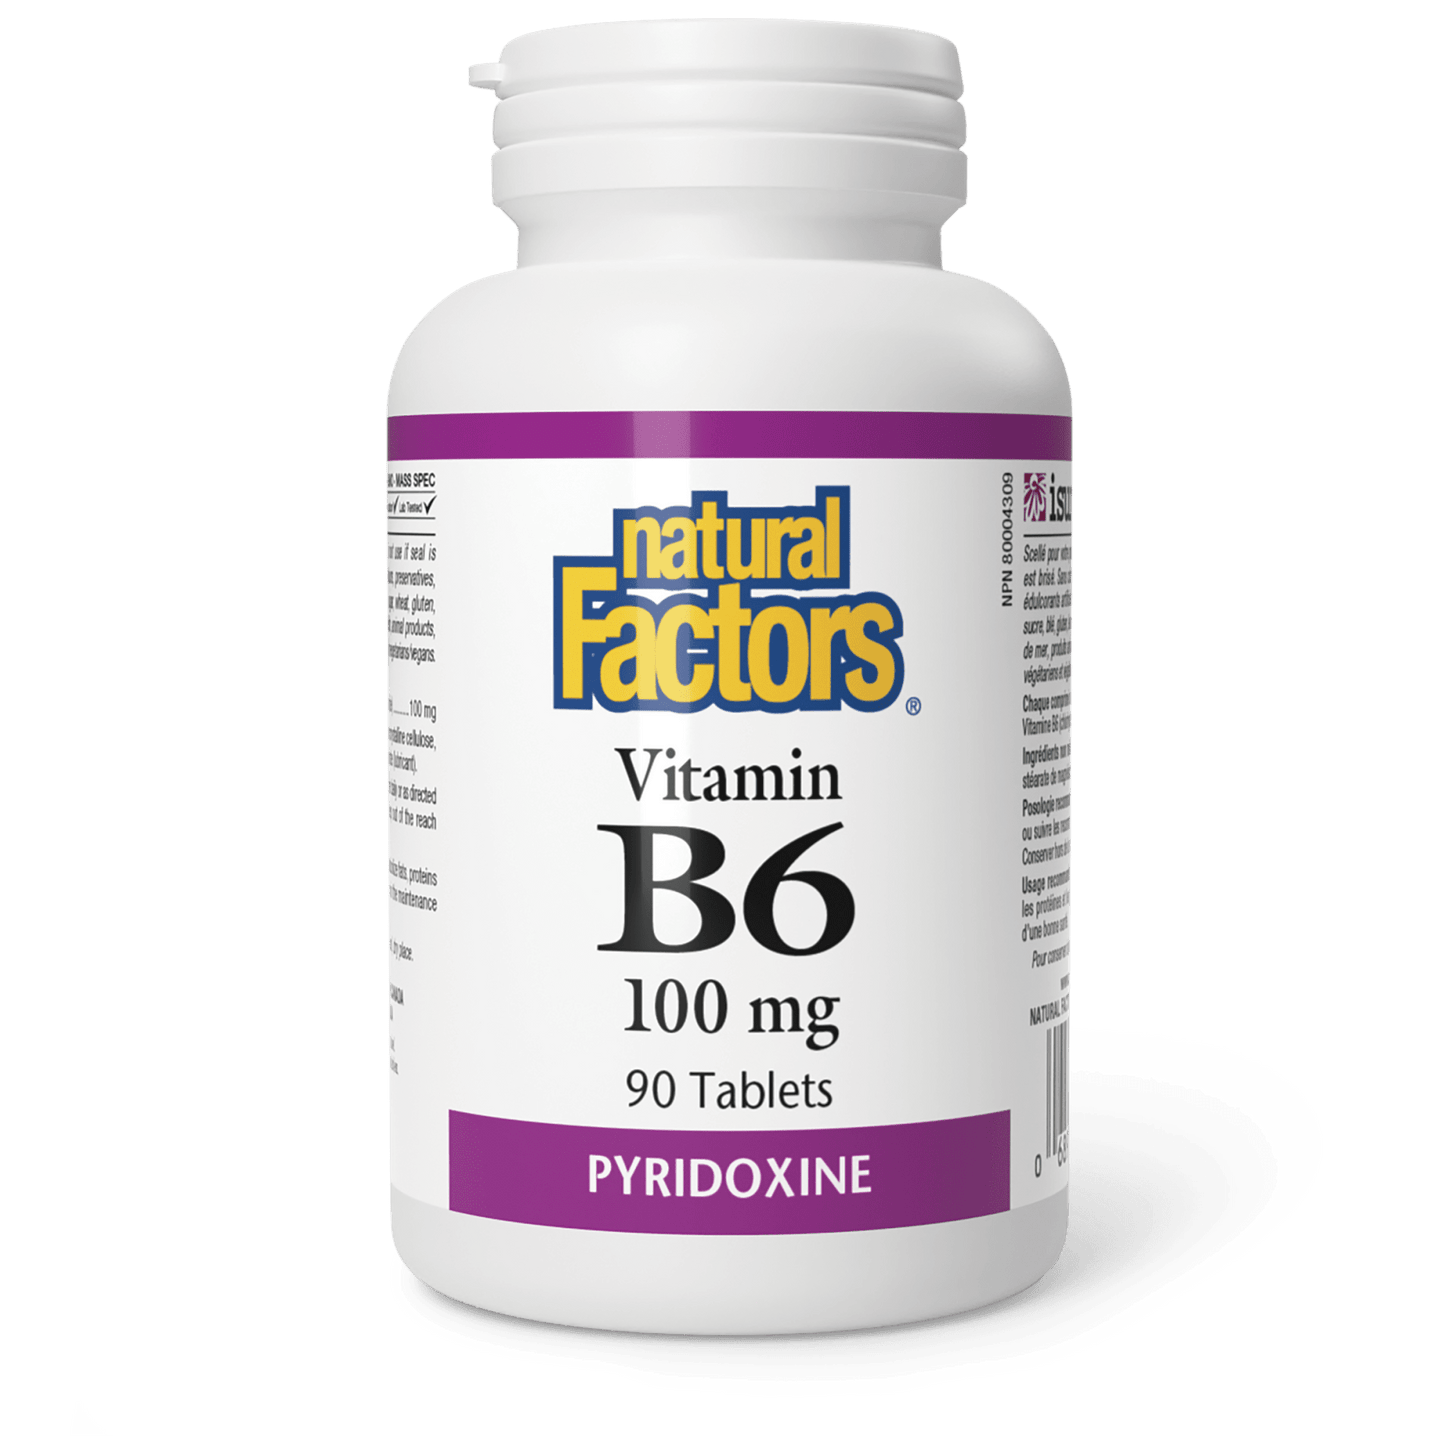 Vitamin B6 100 mg, Natural Factors|v|image|1231